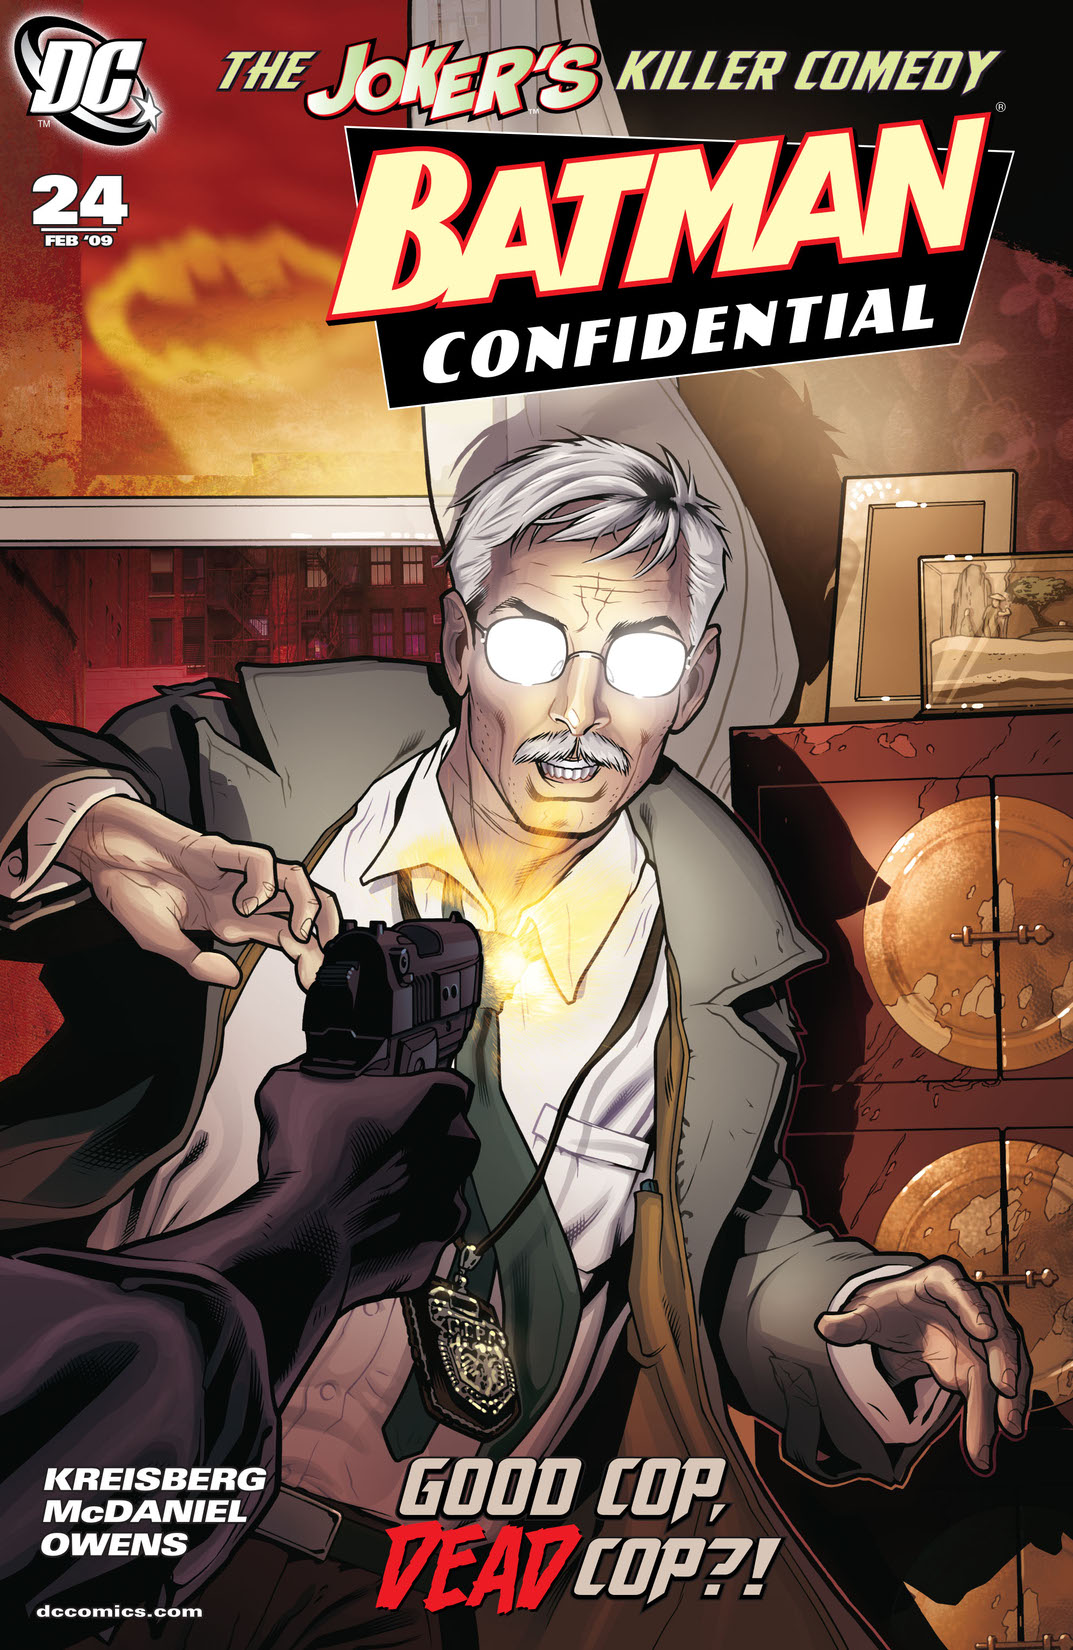 Batman Confidential #24 preview images